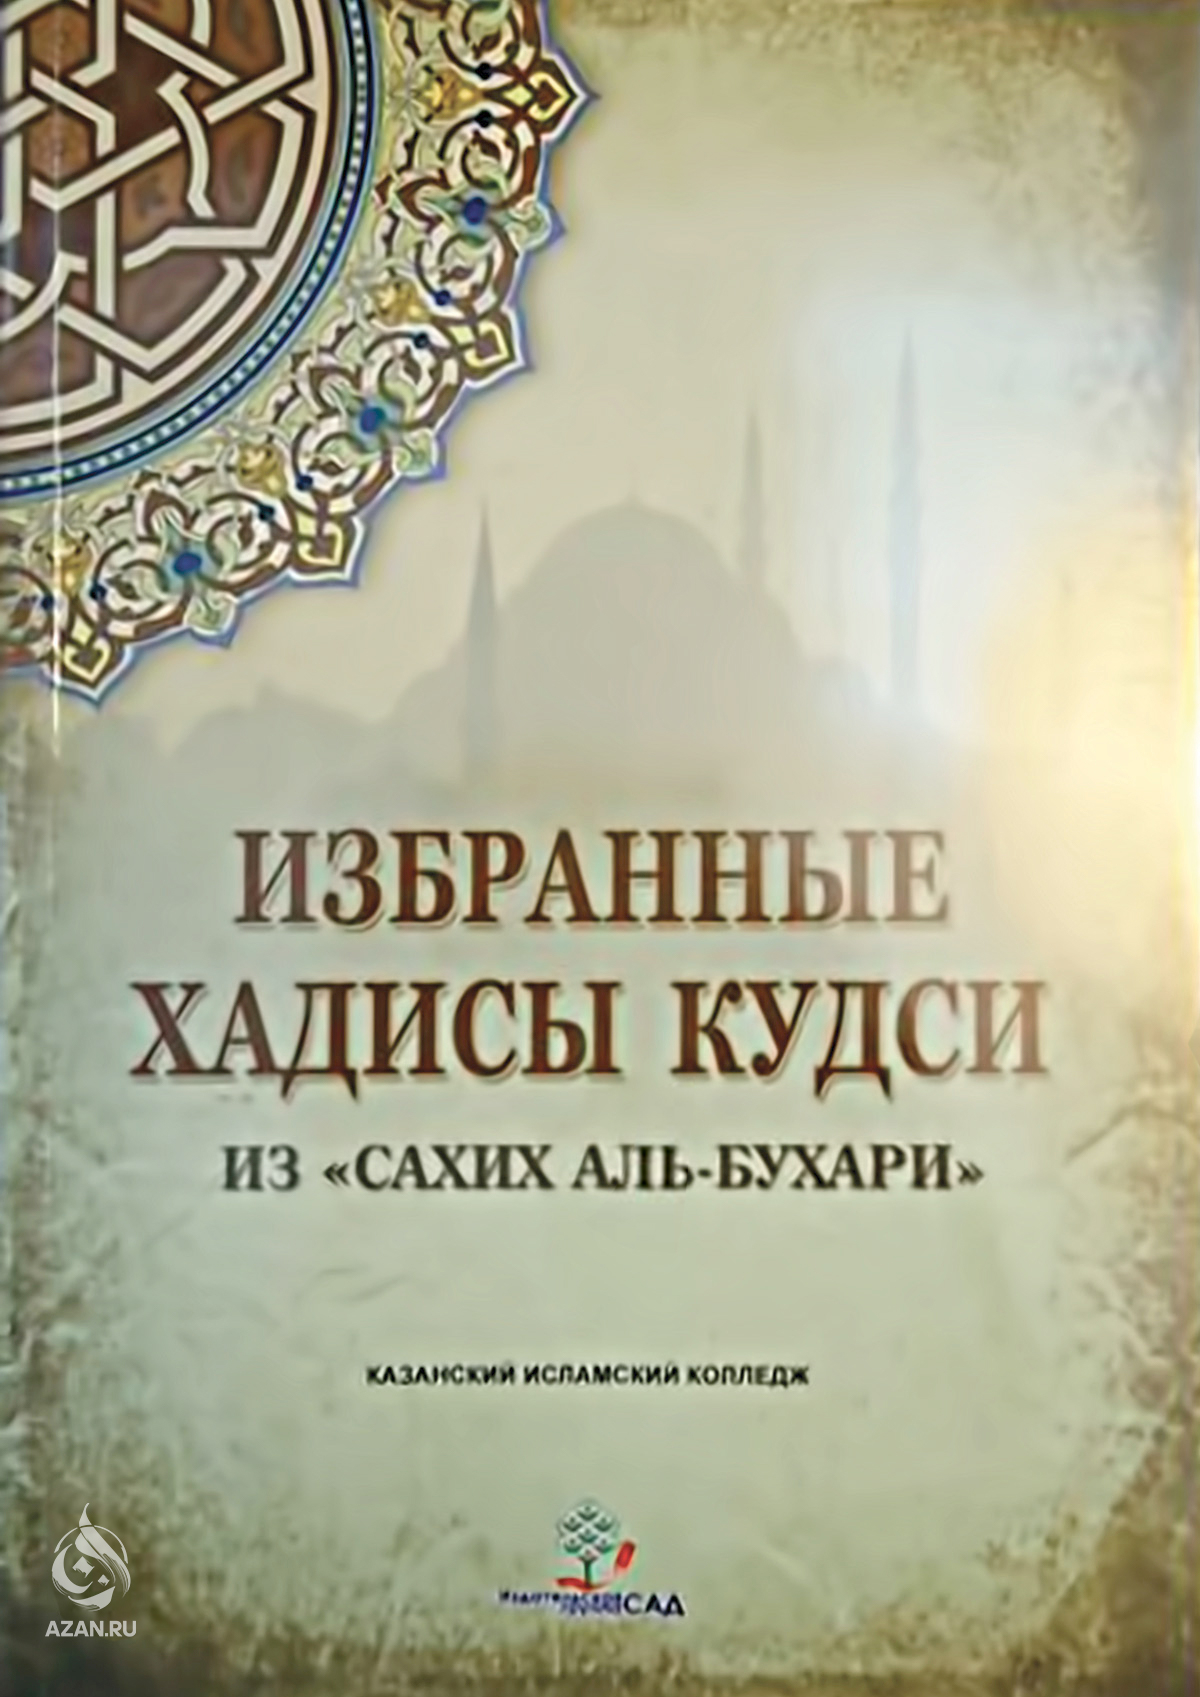 Аль бухари купить. Книга хадисов Аль Бухари. Хадис Кудси Аль Бухари. Избранные хадисы Сахих Аль Бухари.